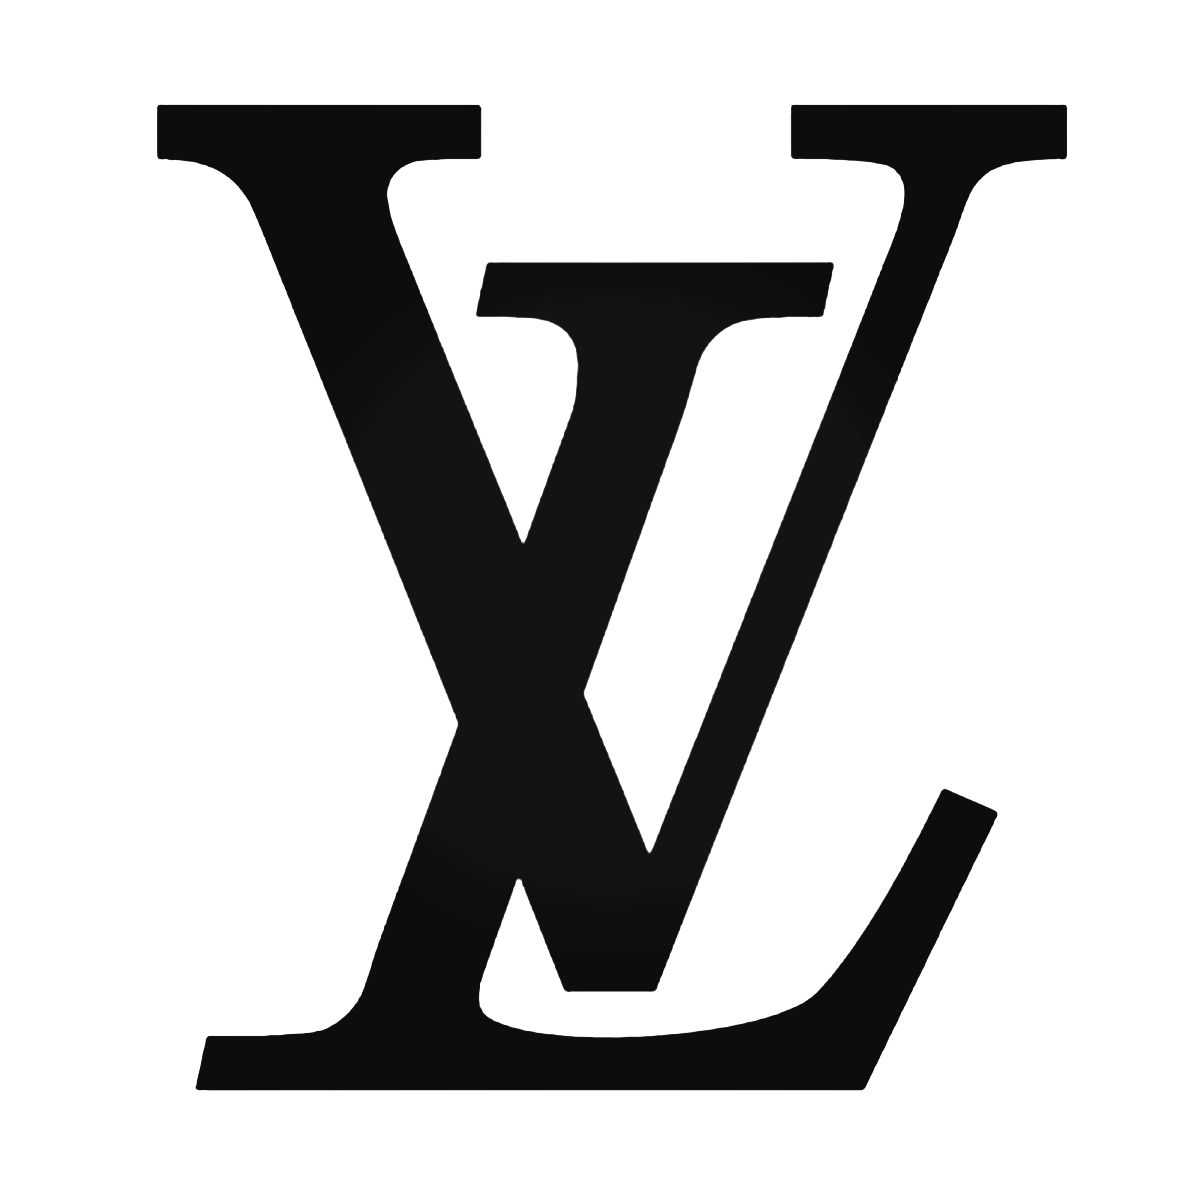 Louis Vuitton - sprrawdź wszystkie promocje